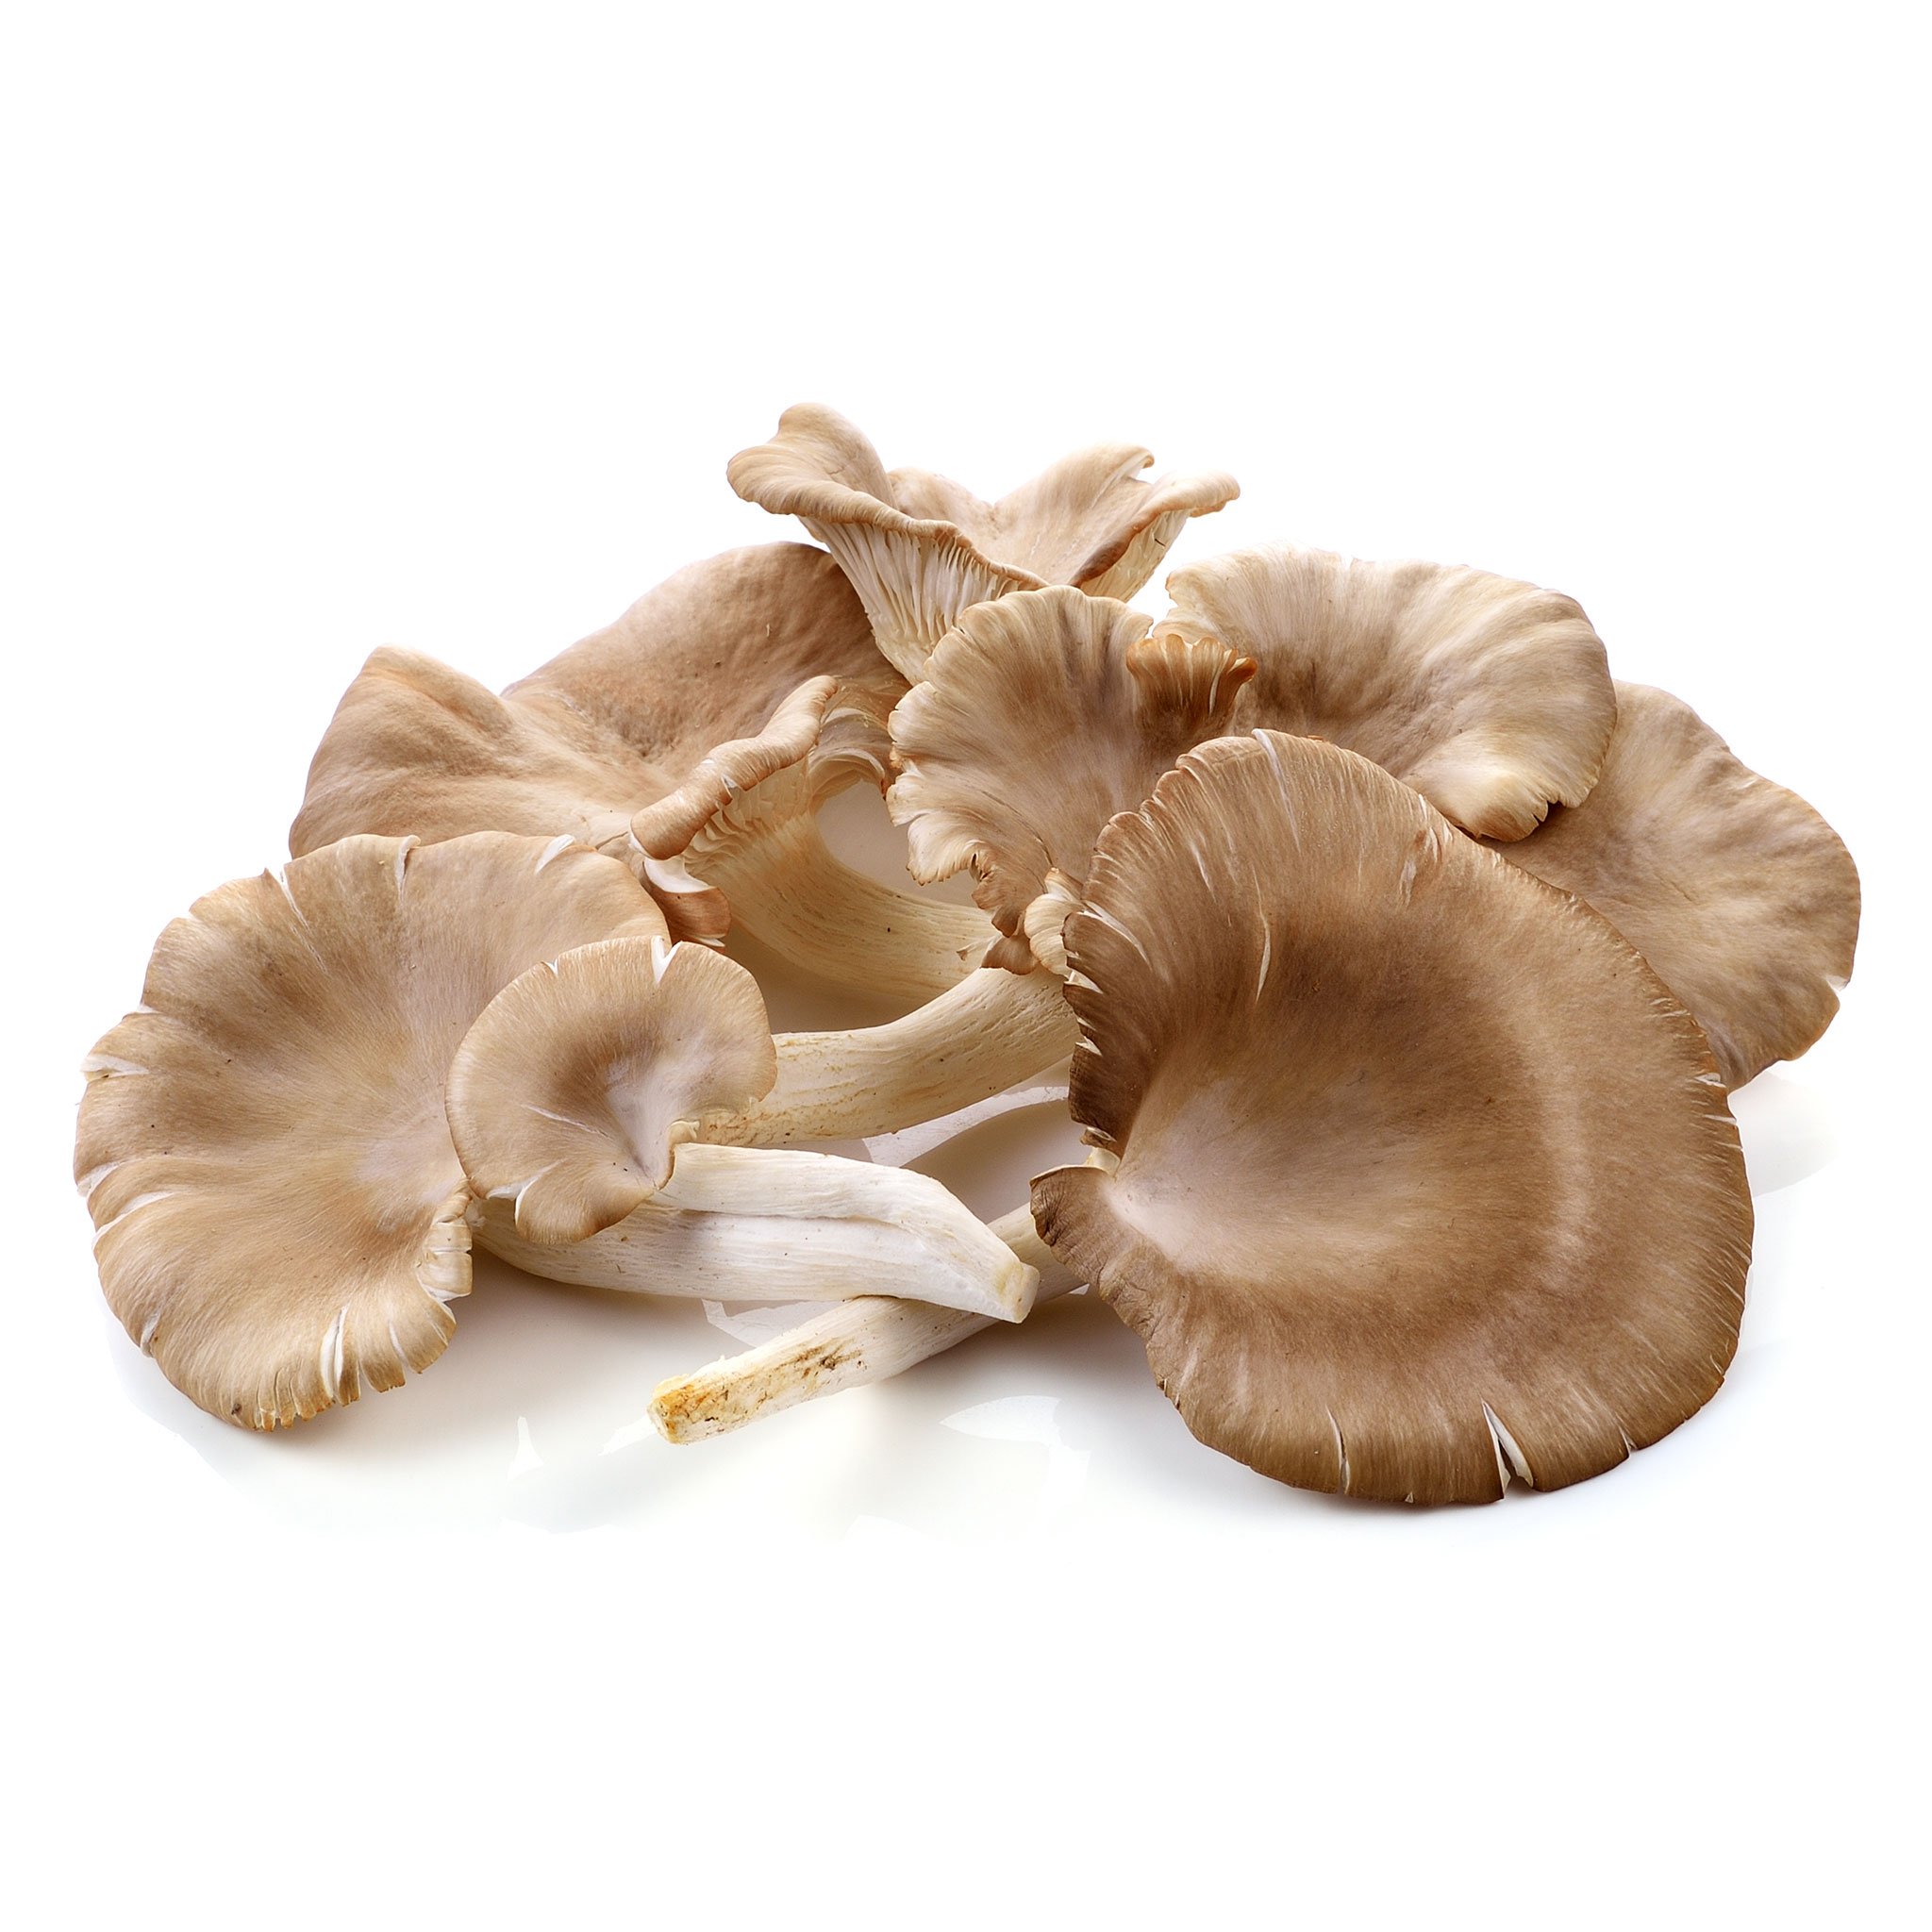 Oyester Mushroom 100 gram